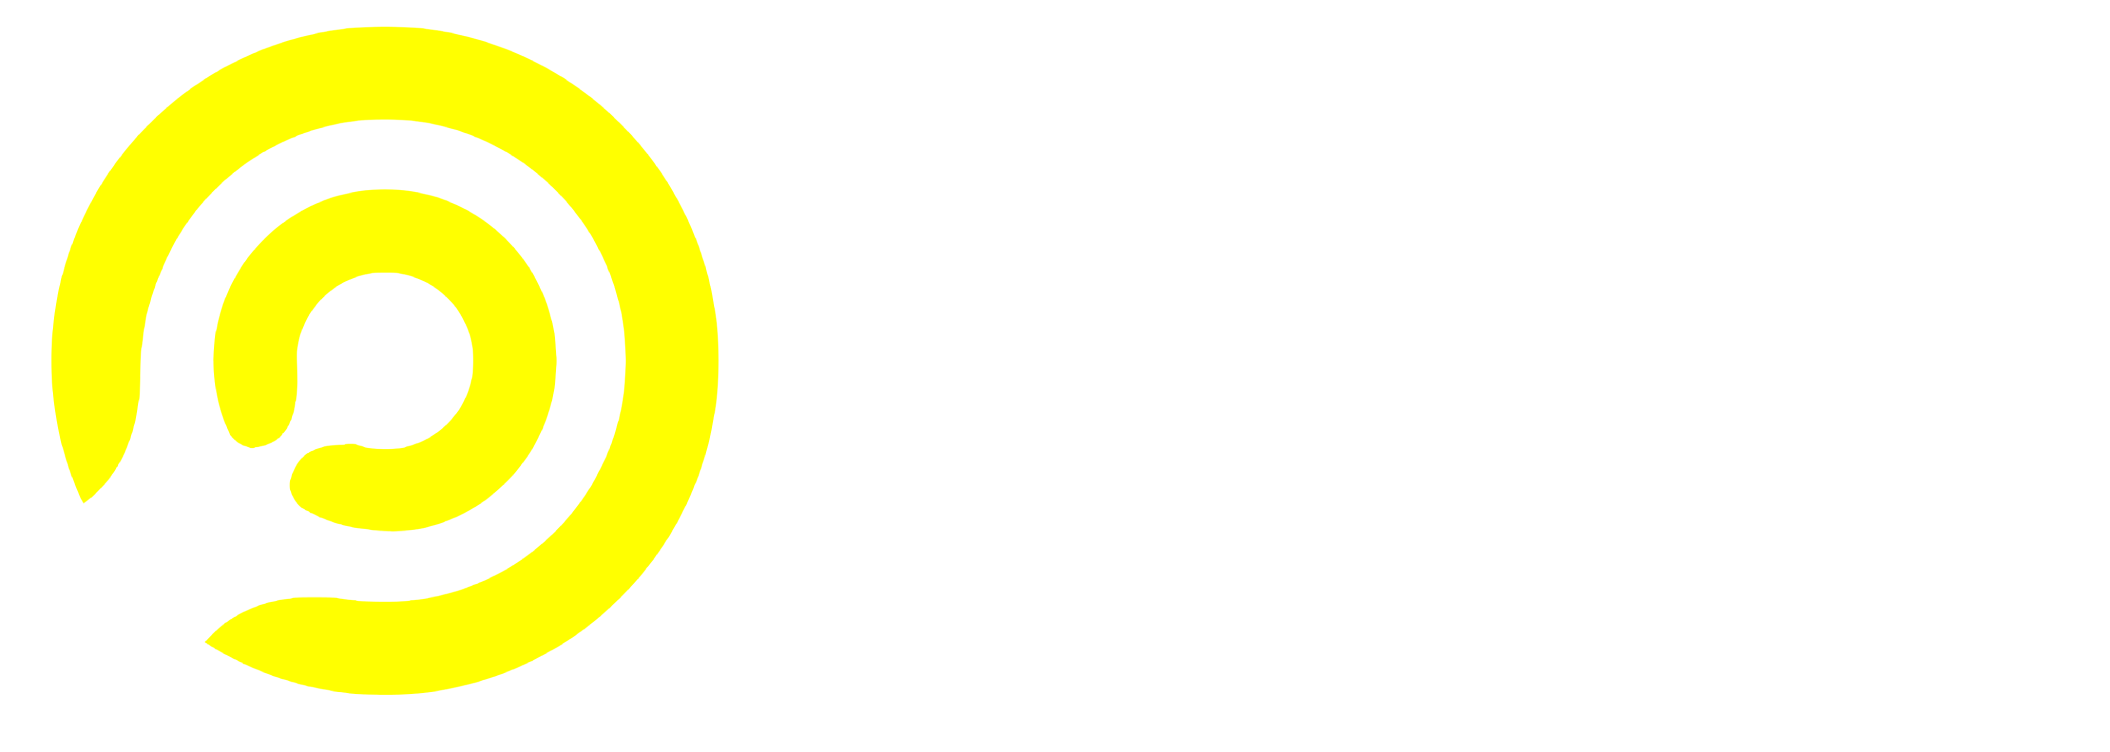 irugoo logo white background